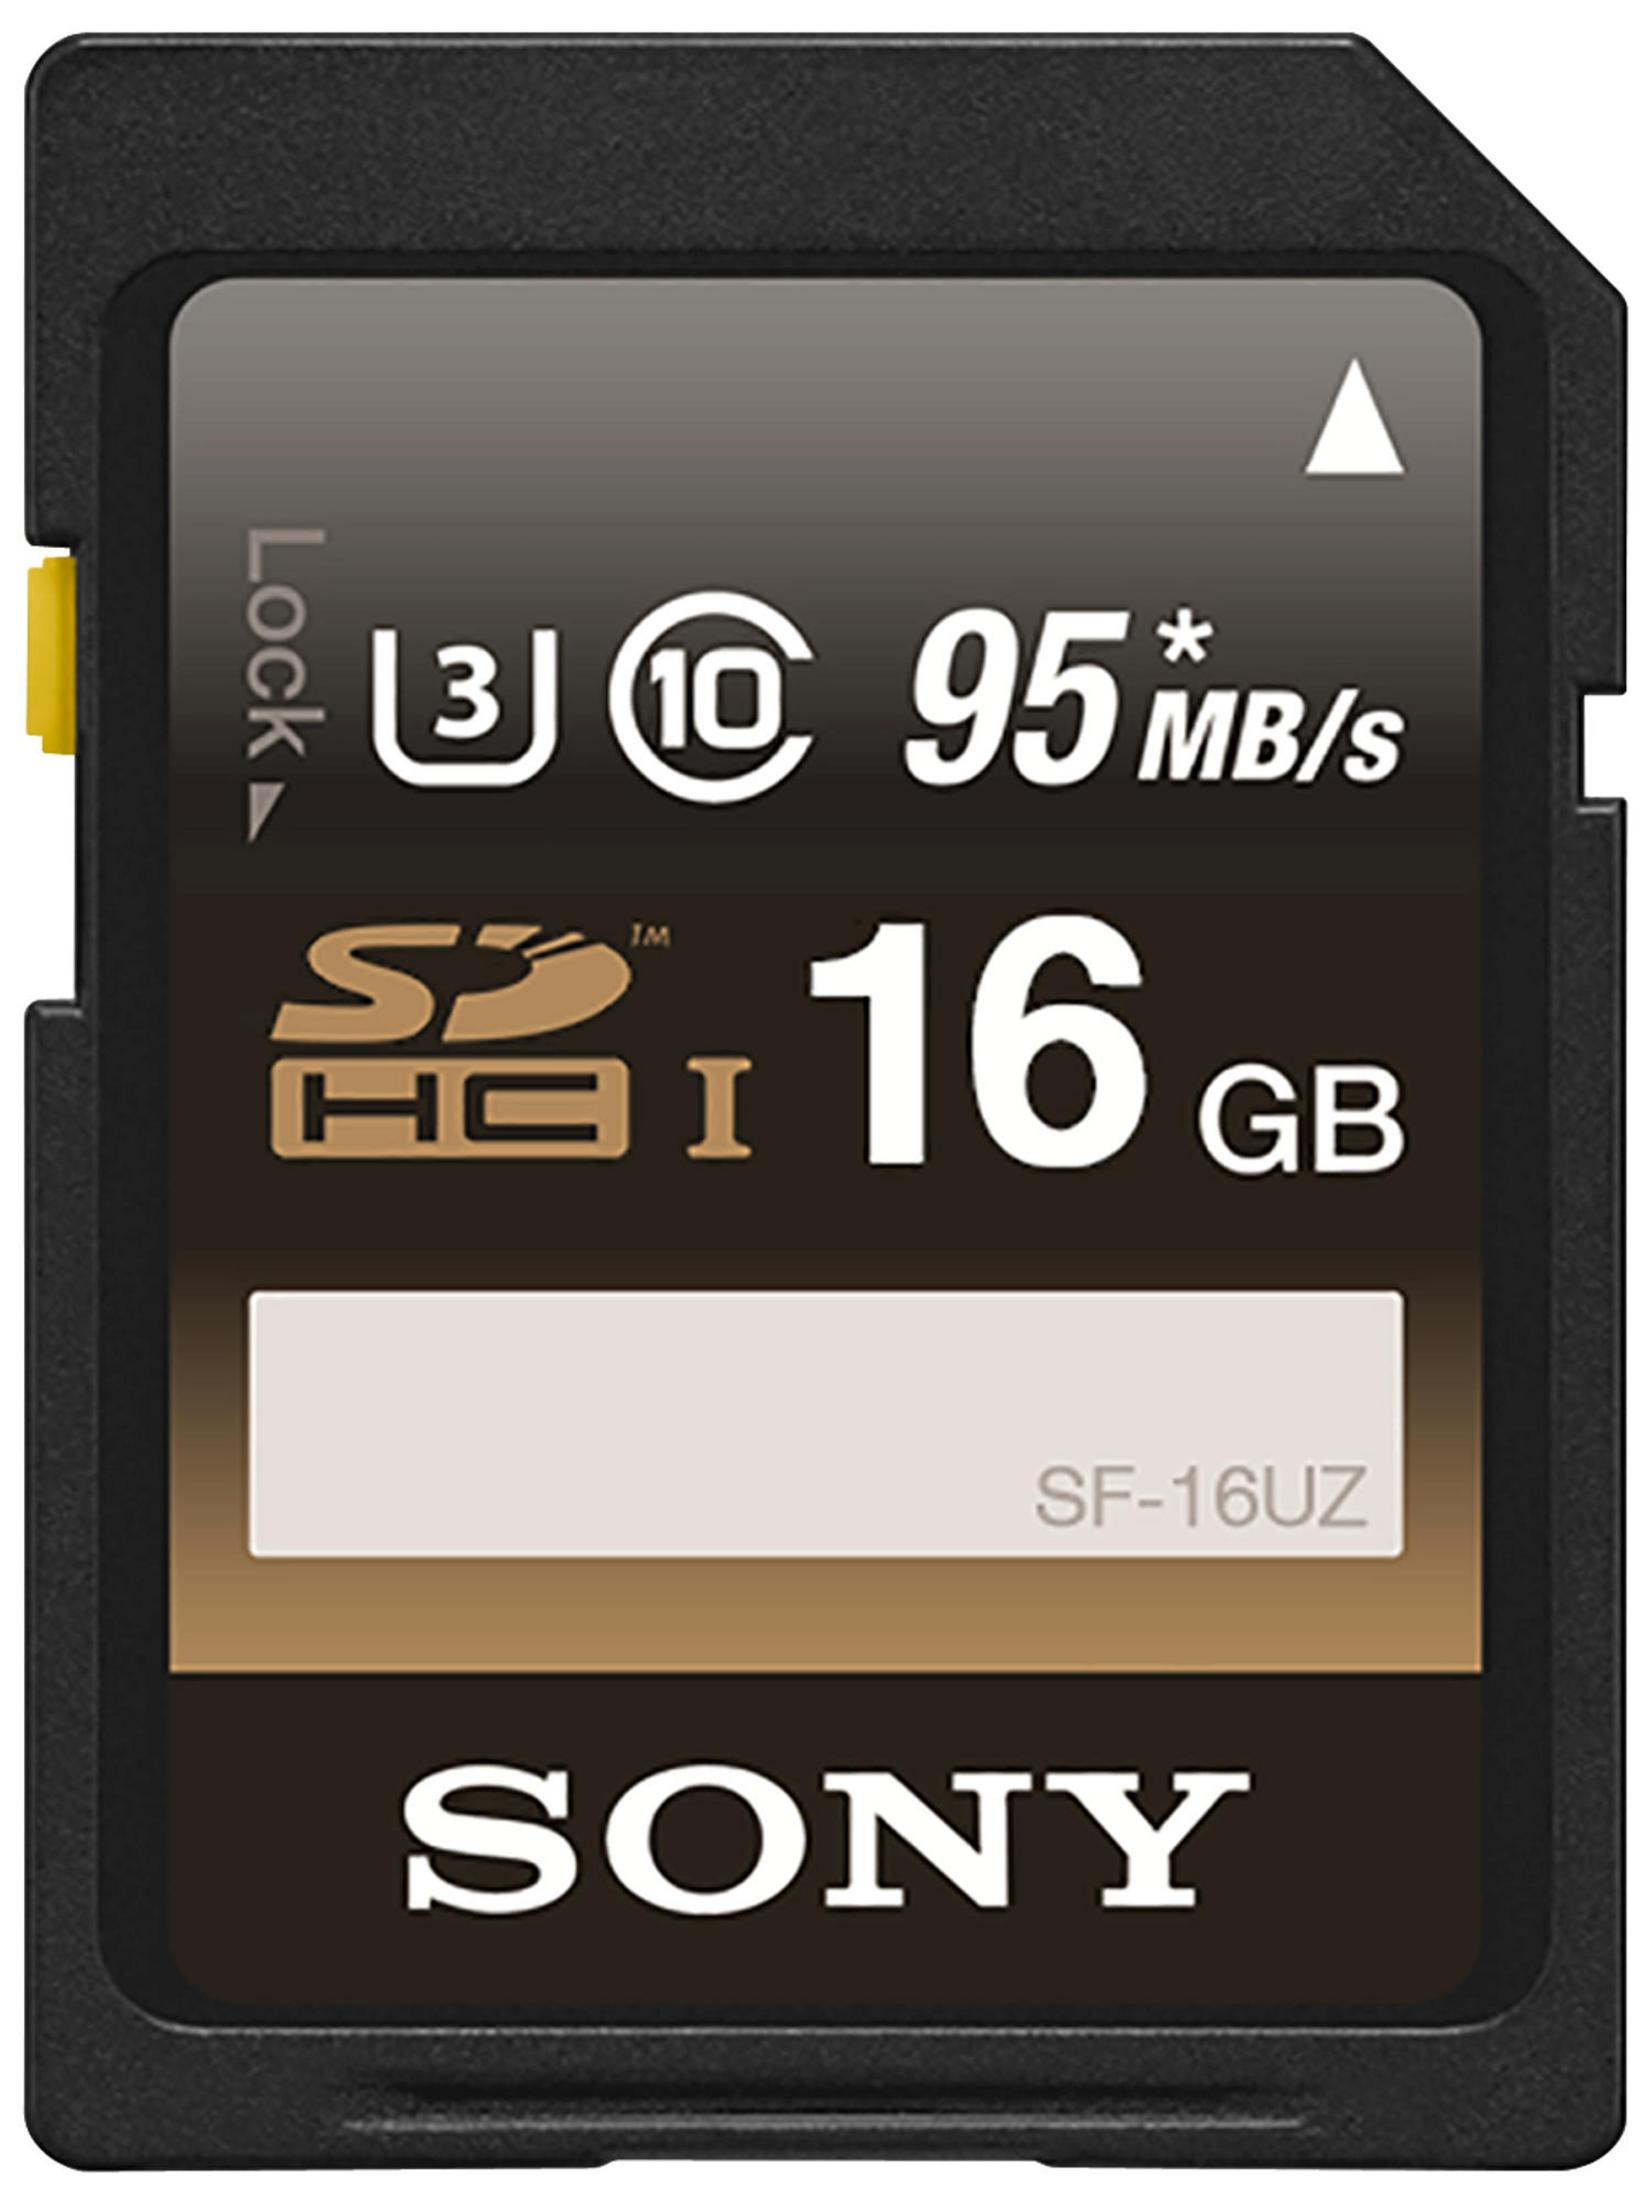 SD 95 UZ, SONY Speicherkarte, 16 GB, Mbit/s 16 SF